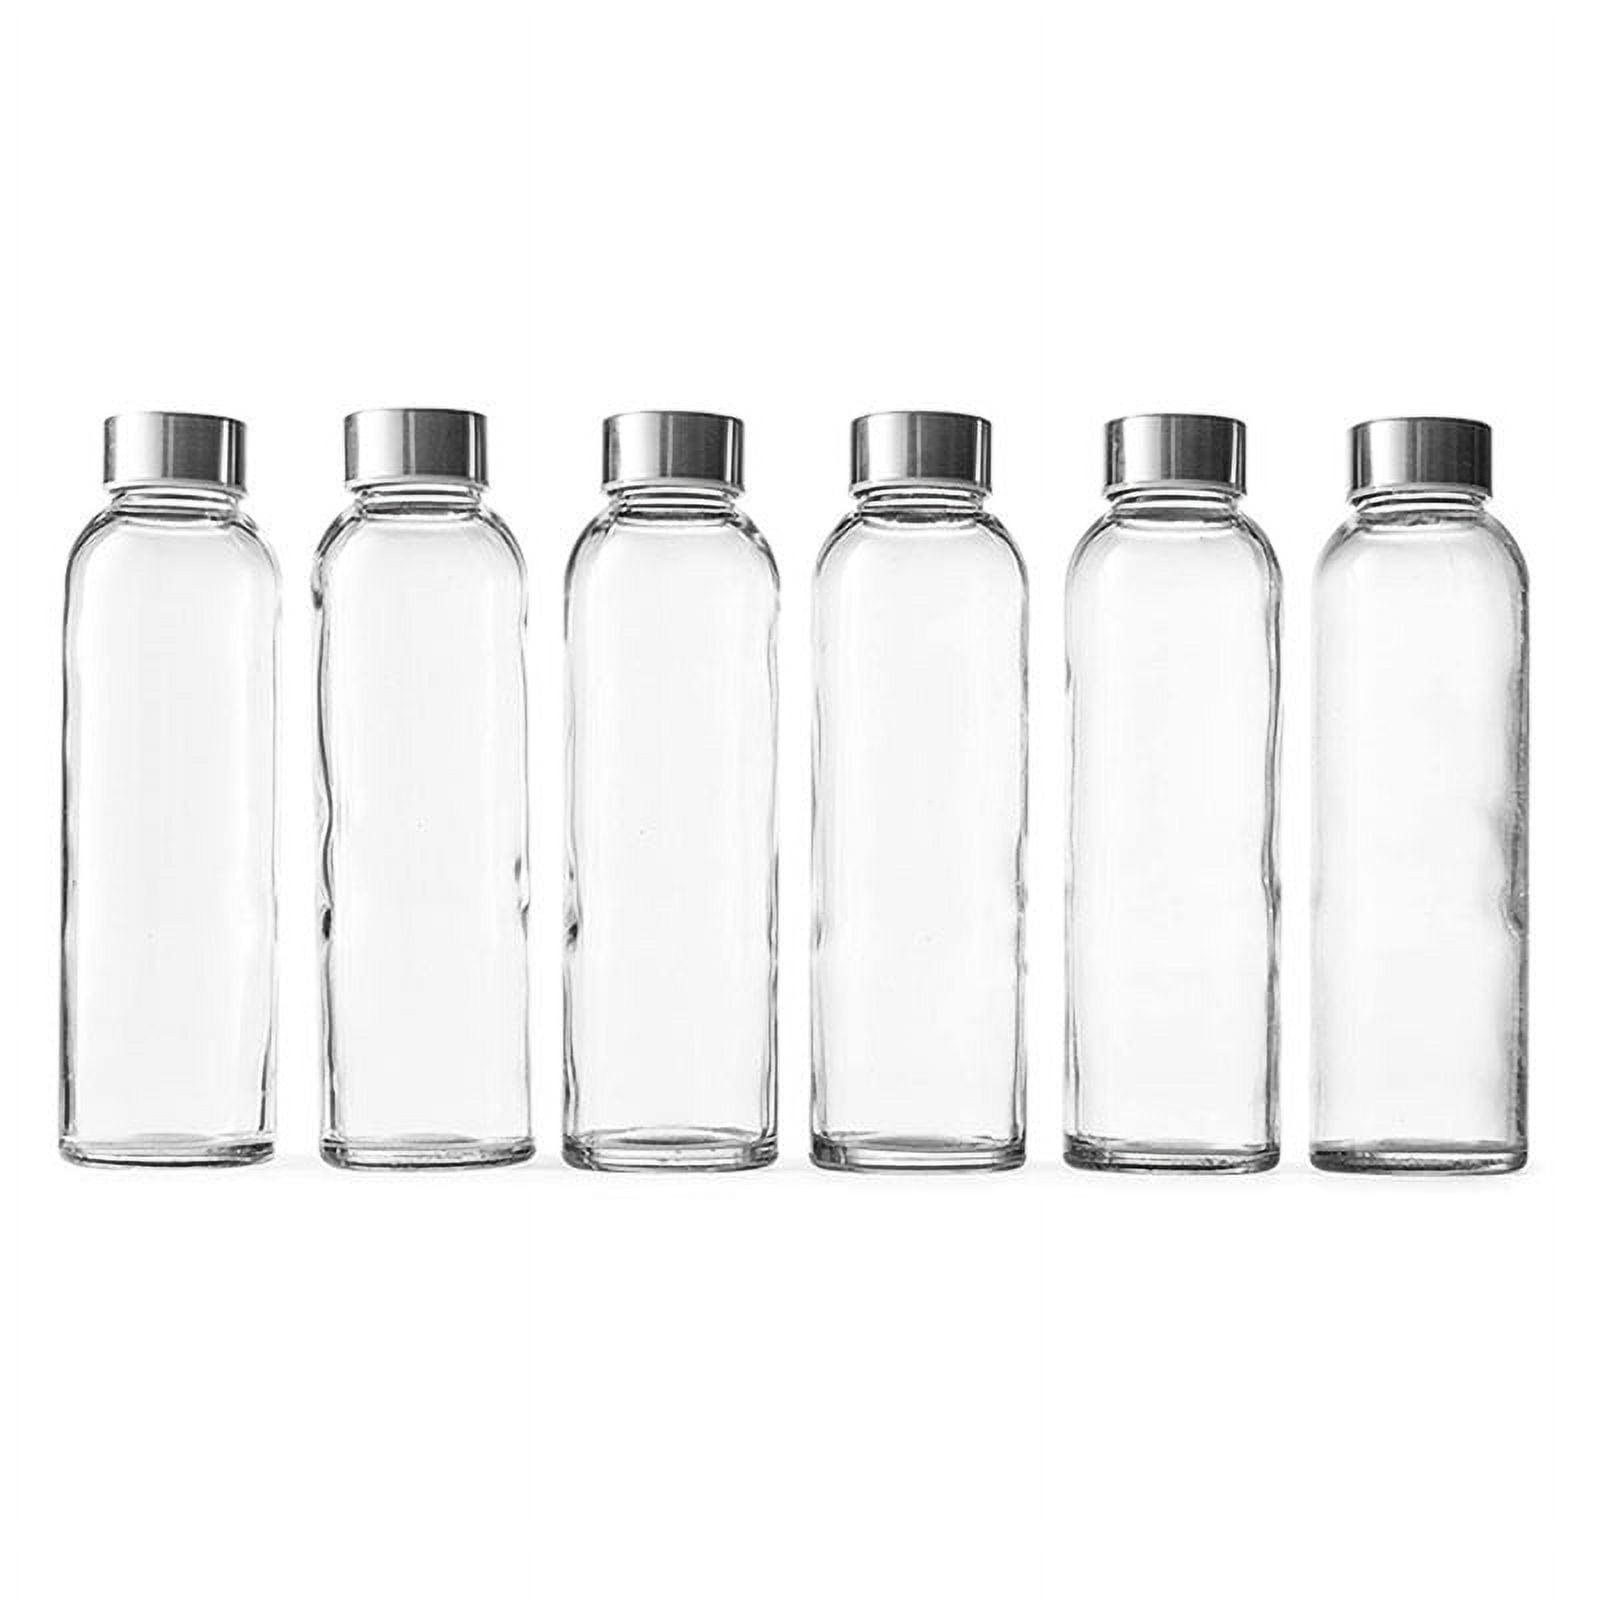 18 oz. Clear Glass Water Bottle